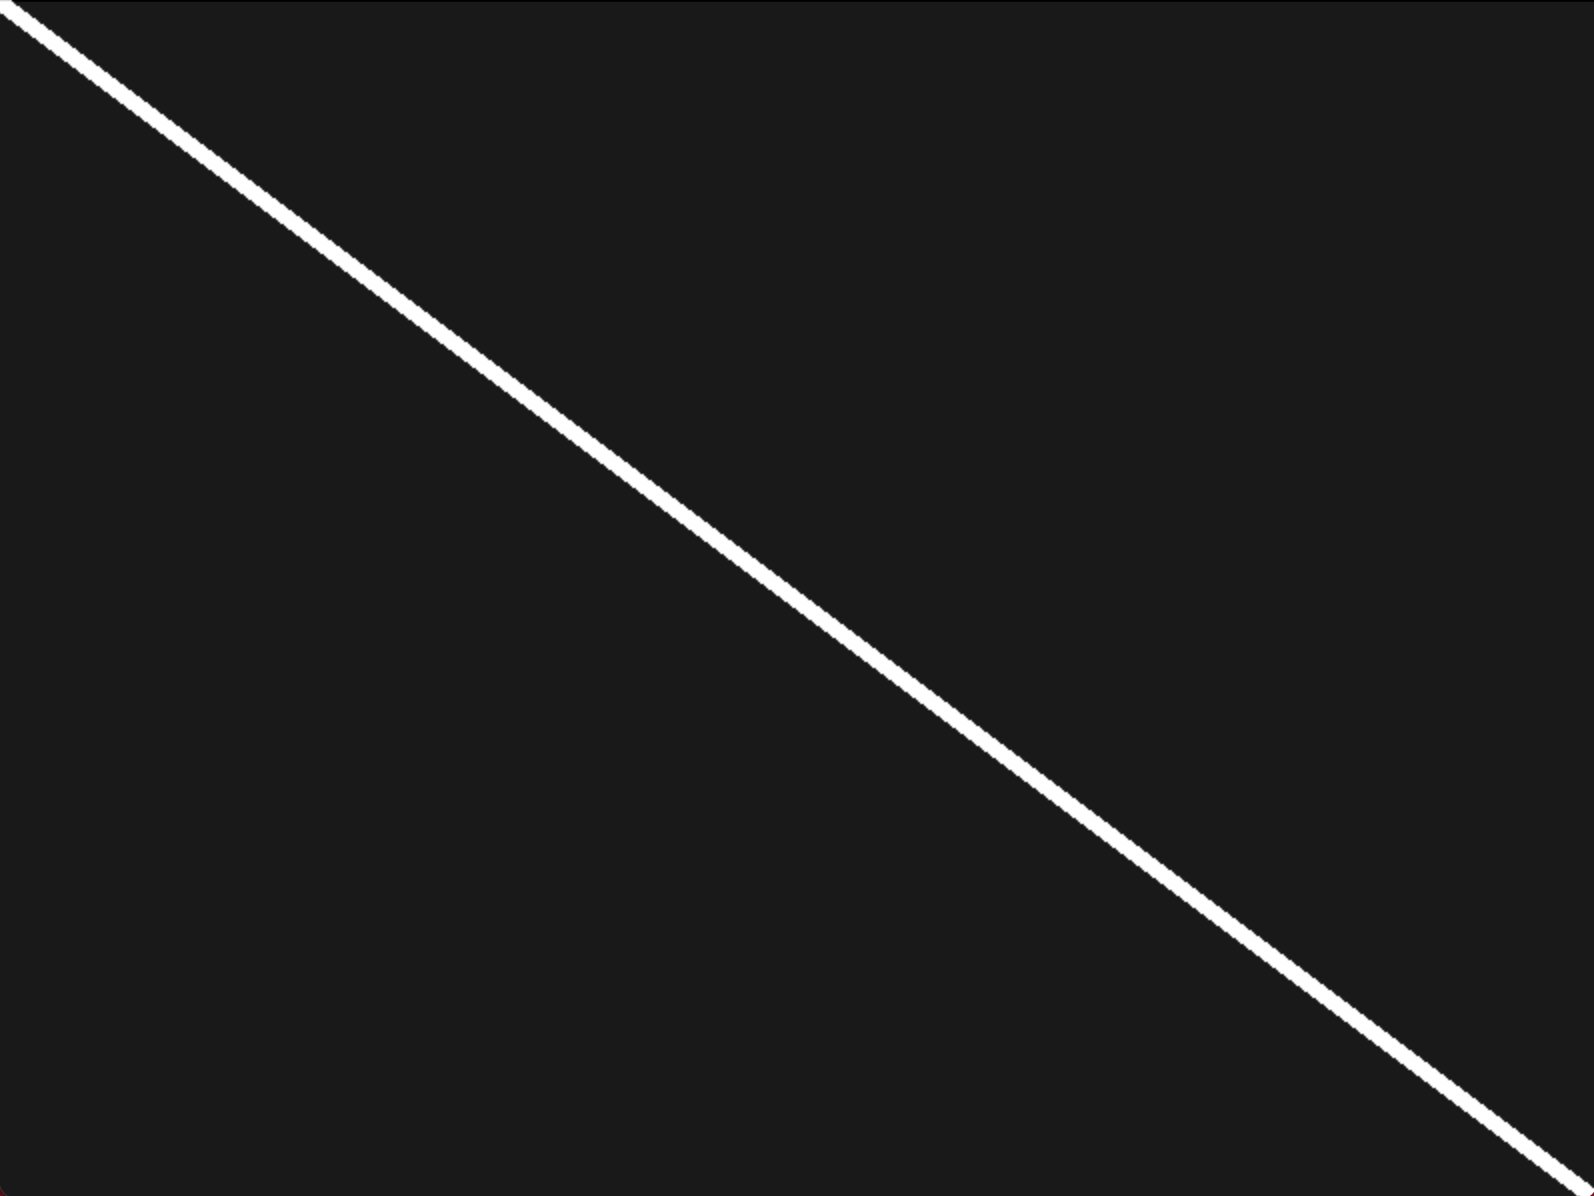 mit der PyGame Funktion draw.line zeichnen wir eine diagonale Linie